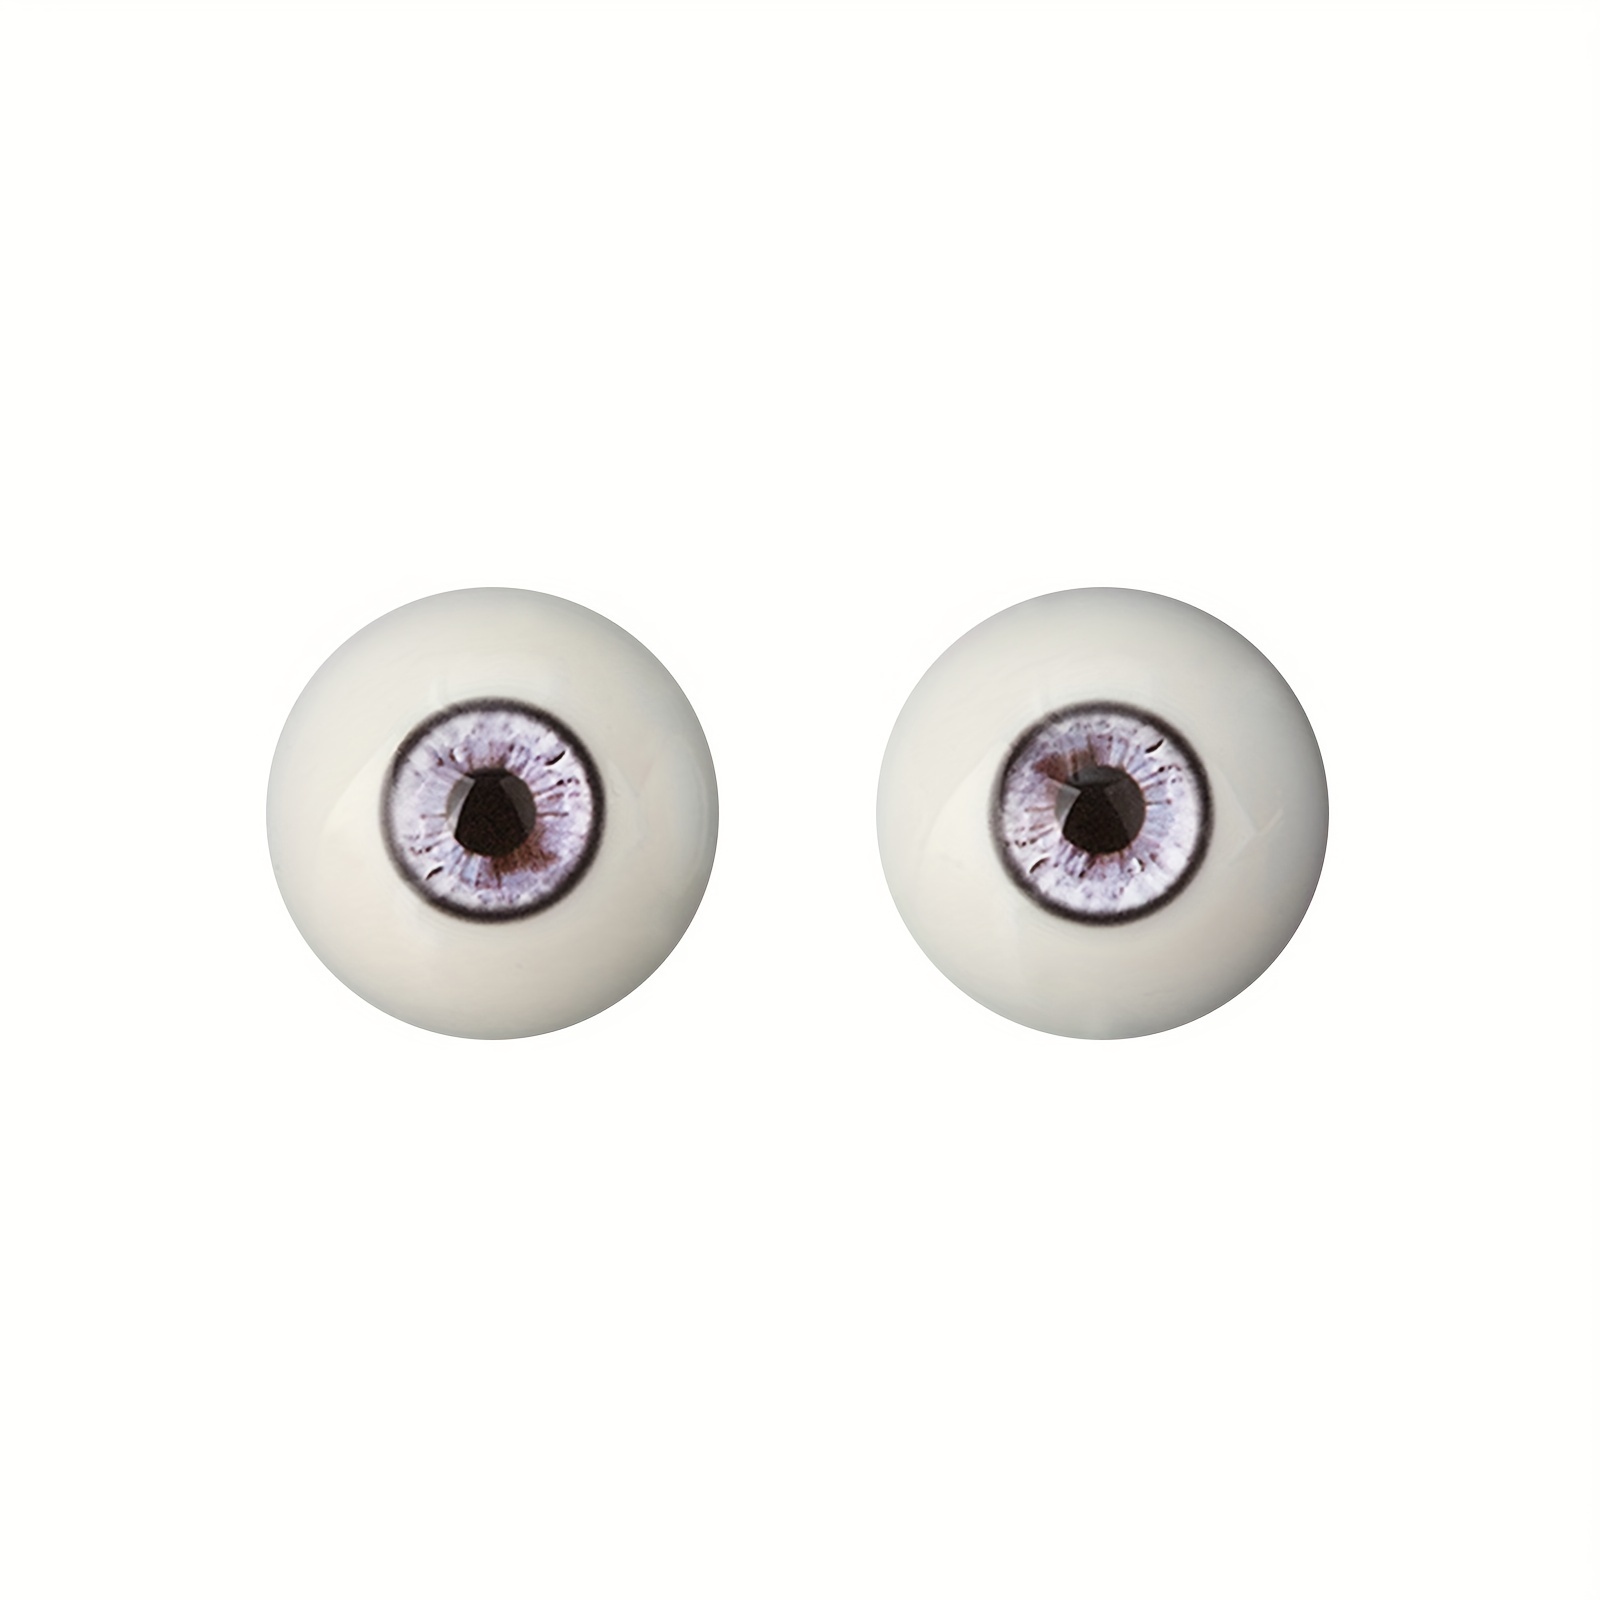 Acrylic Doll Eye, Plastic Eyes, Oval Eyes, Half Round, German Doll Eye